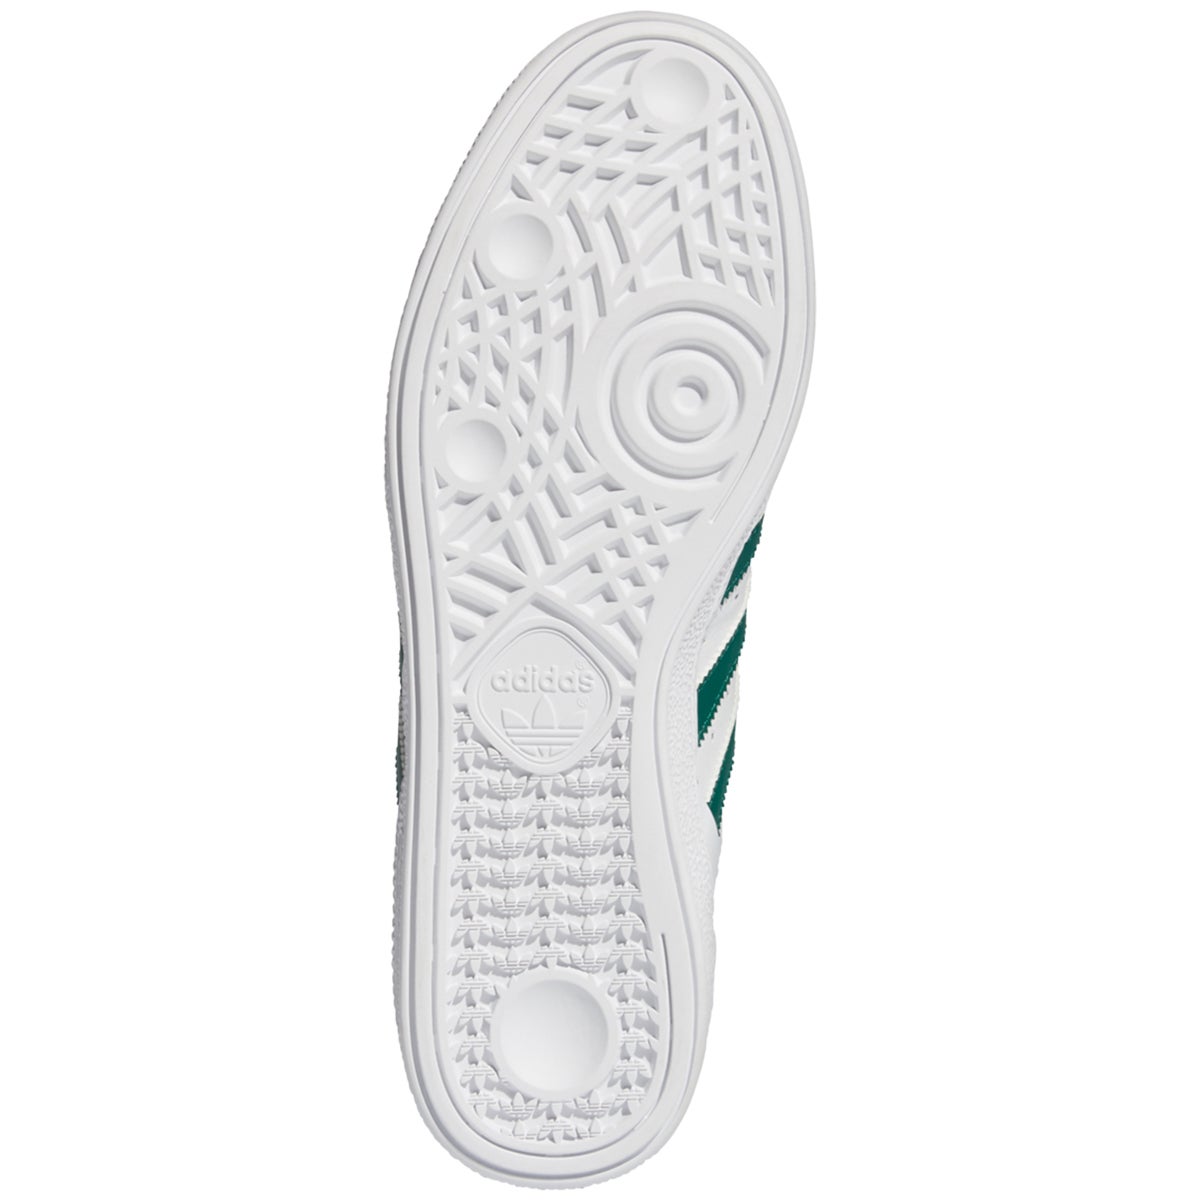 adidas busenitz white green